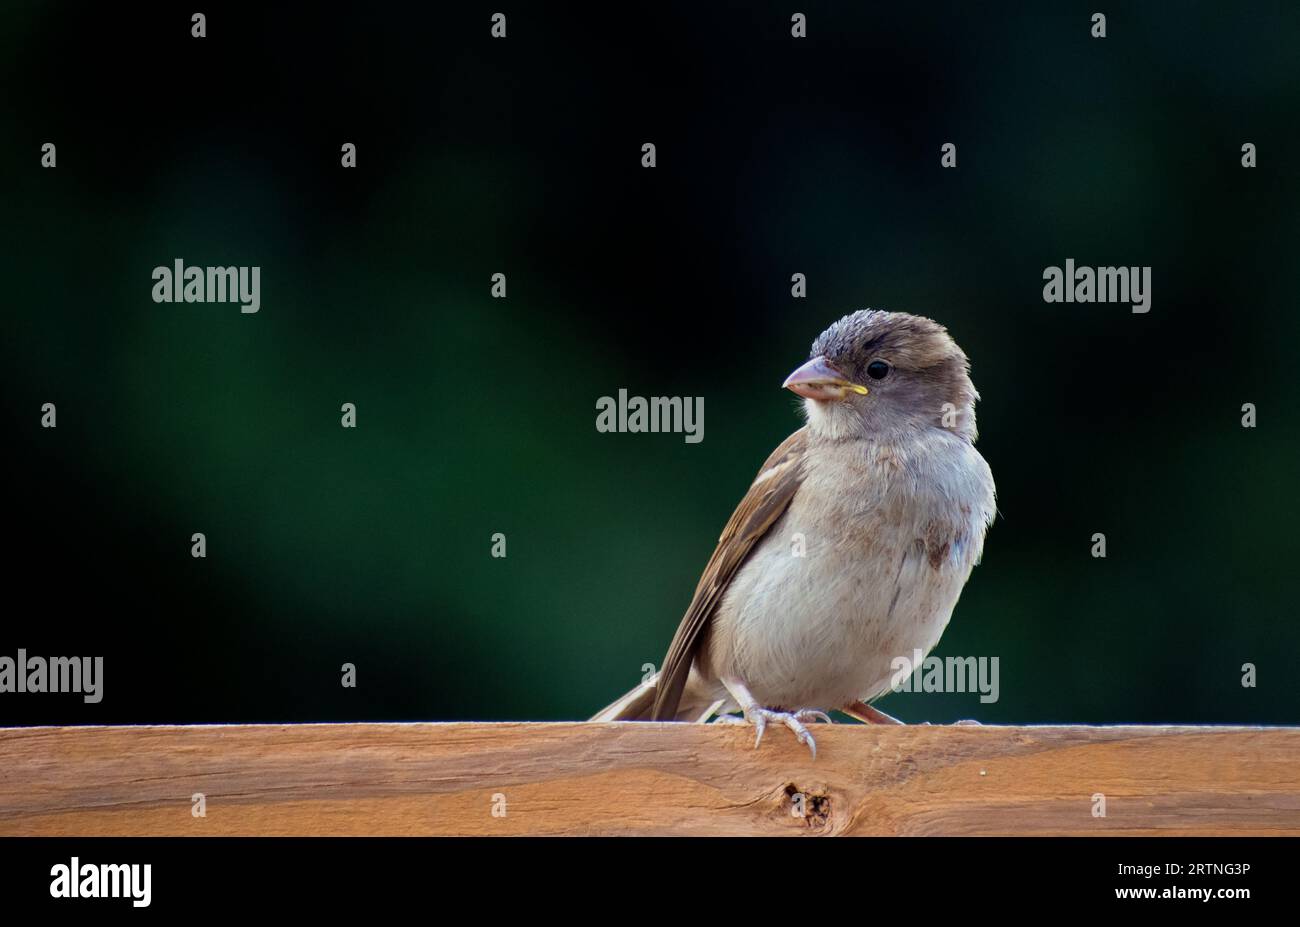 Sparrow on a log Stock Photo